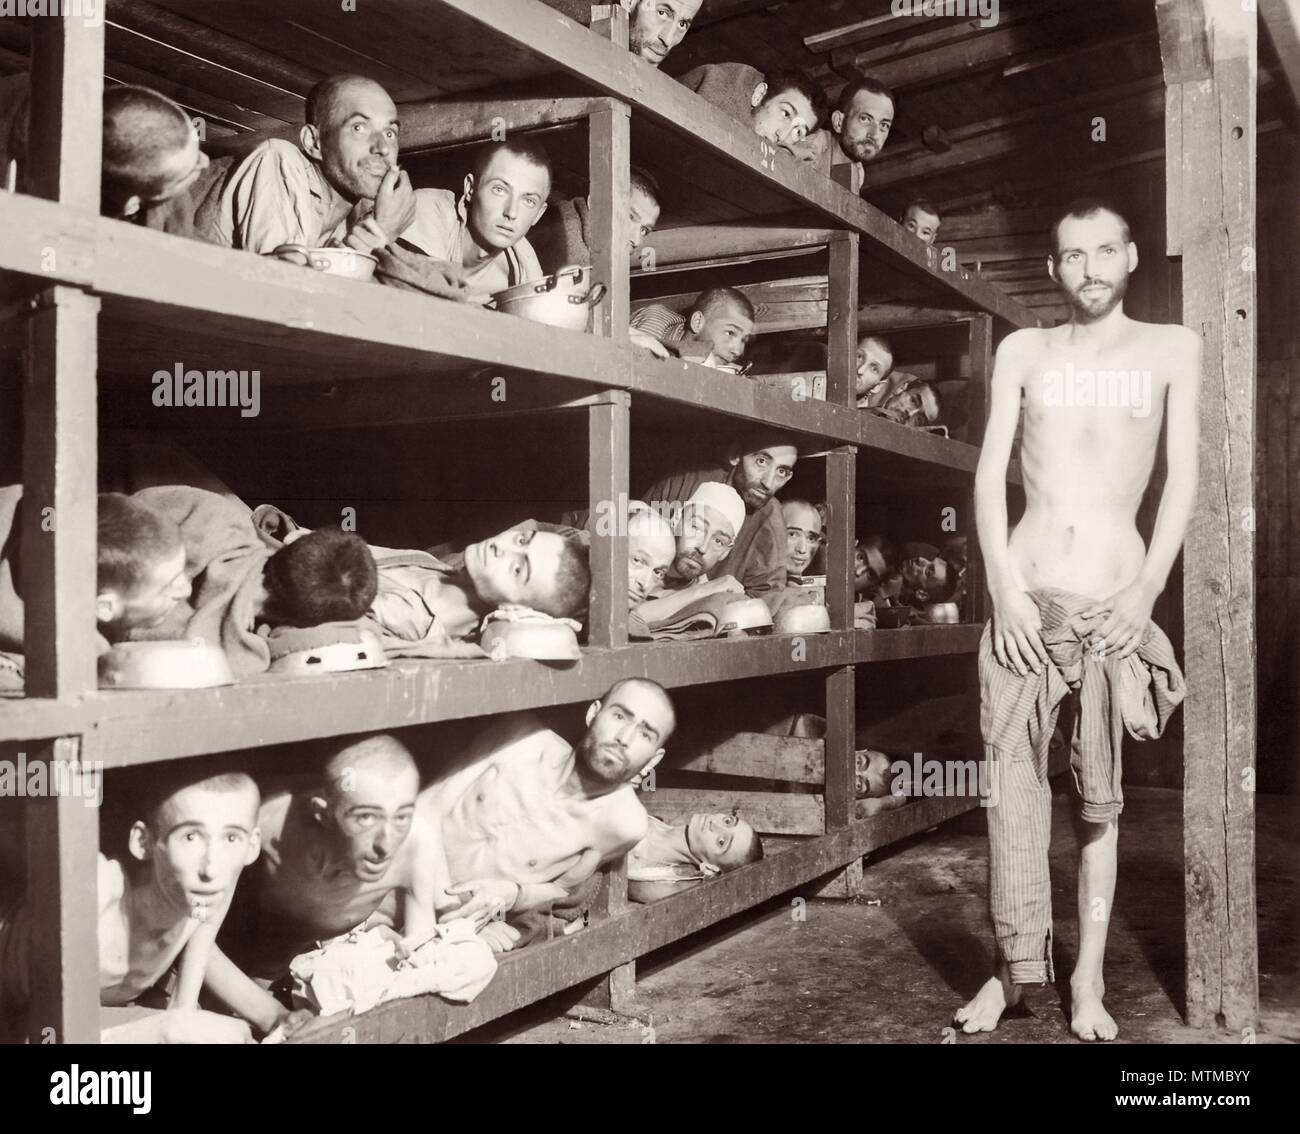 A Buchenwald Campo di Concentramento il 16 aprile 1945. Elie Wiesel, che in seguito hanno ricevuto il Premio Nobel per la Pace nel 1986, è la settima persona da sinistra sulla seconda fila dal fondo. Foto Stock